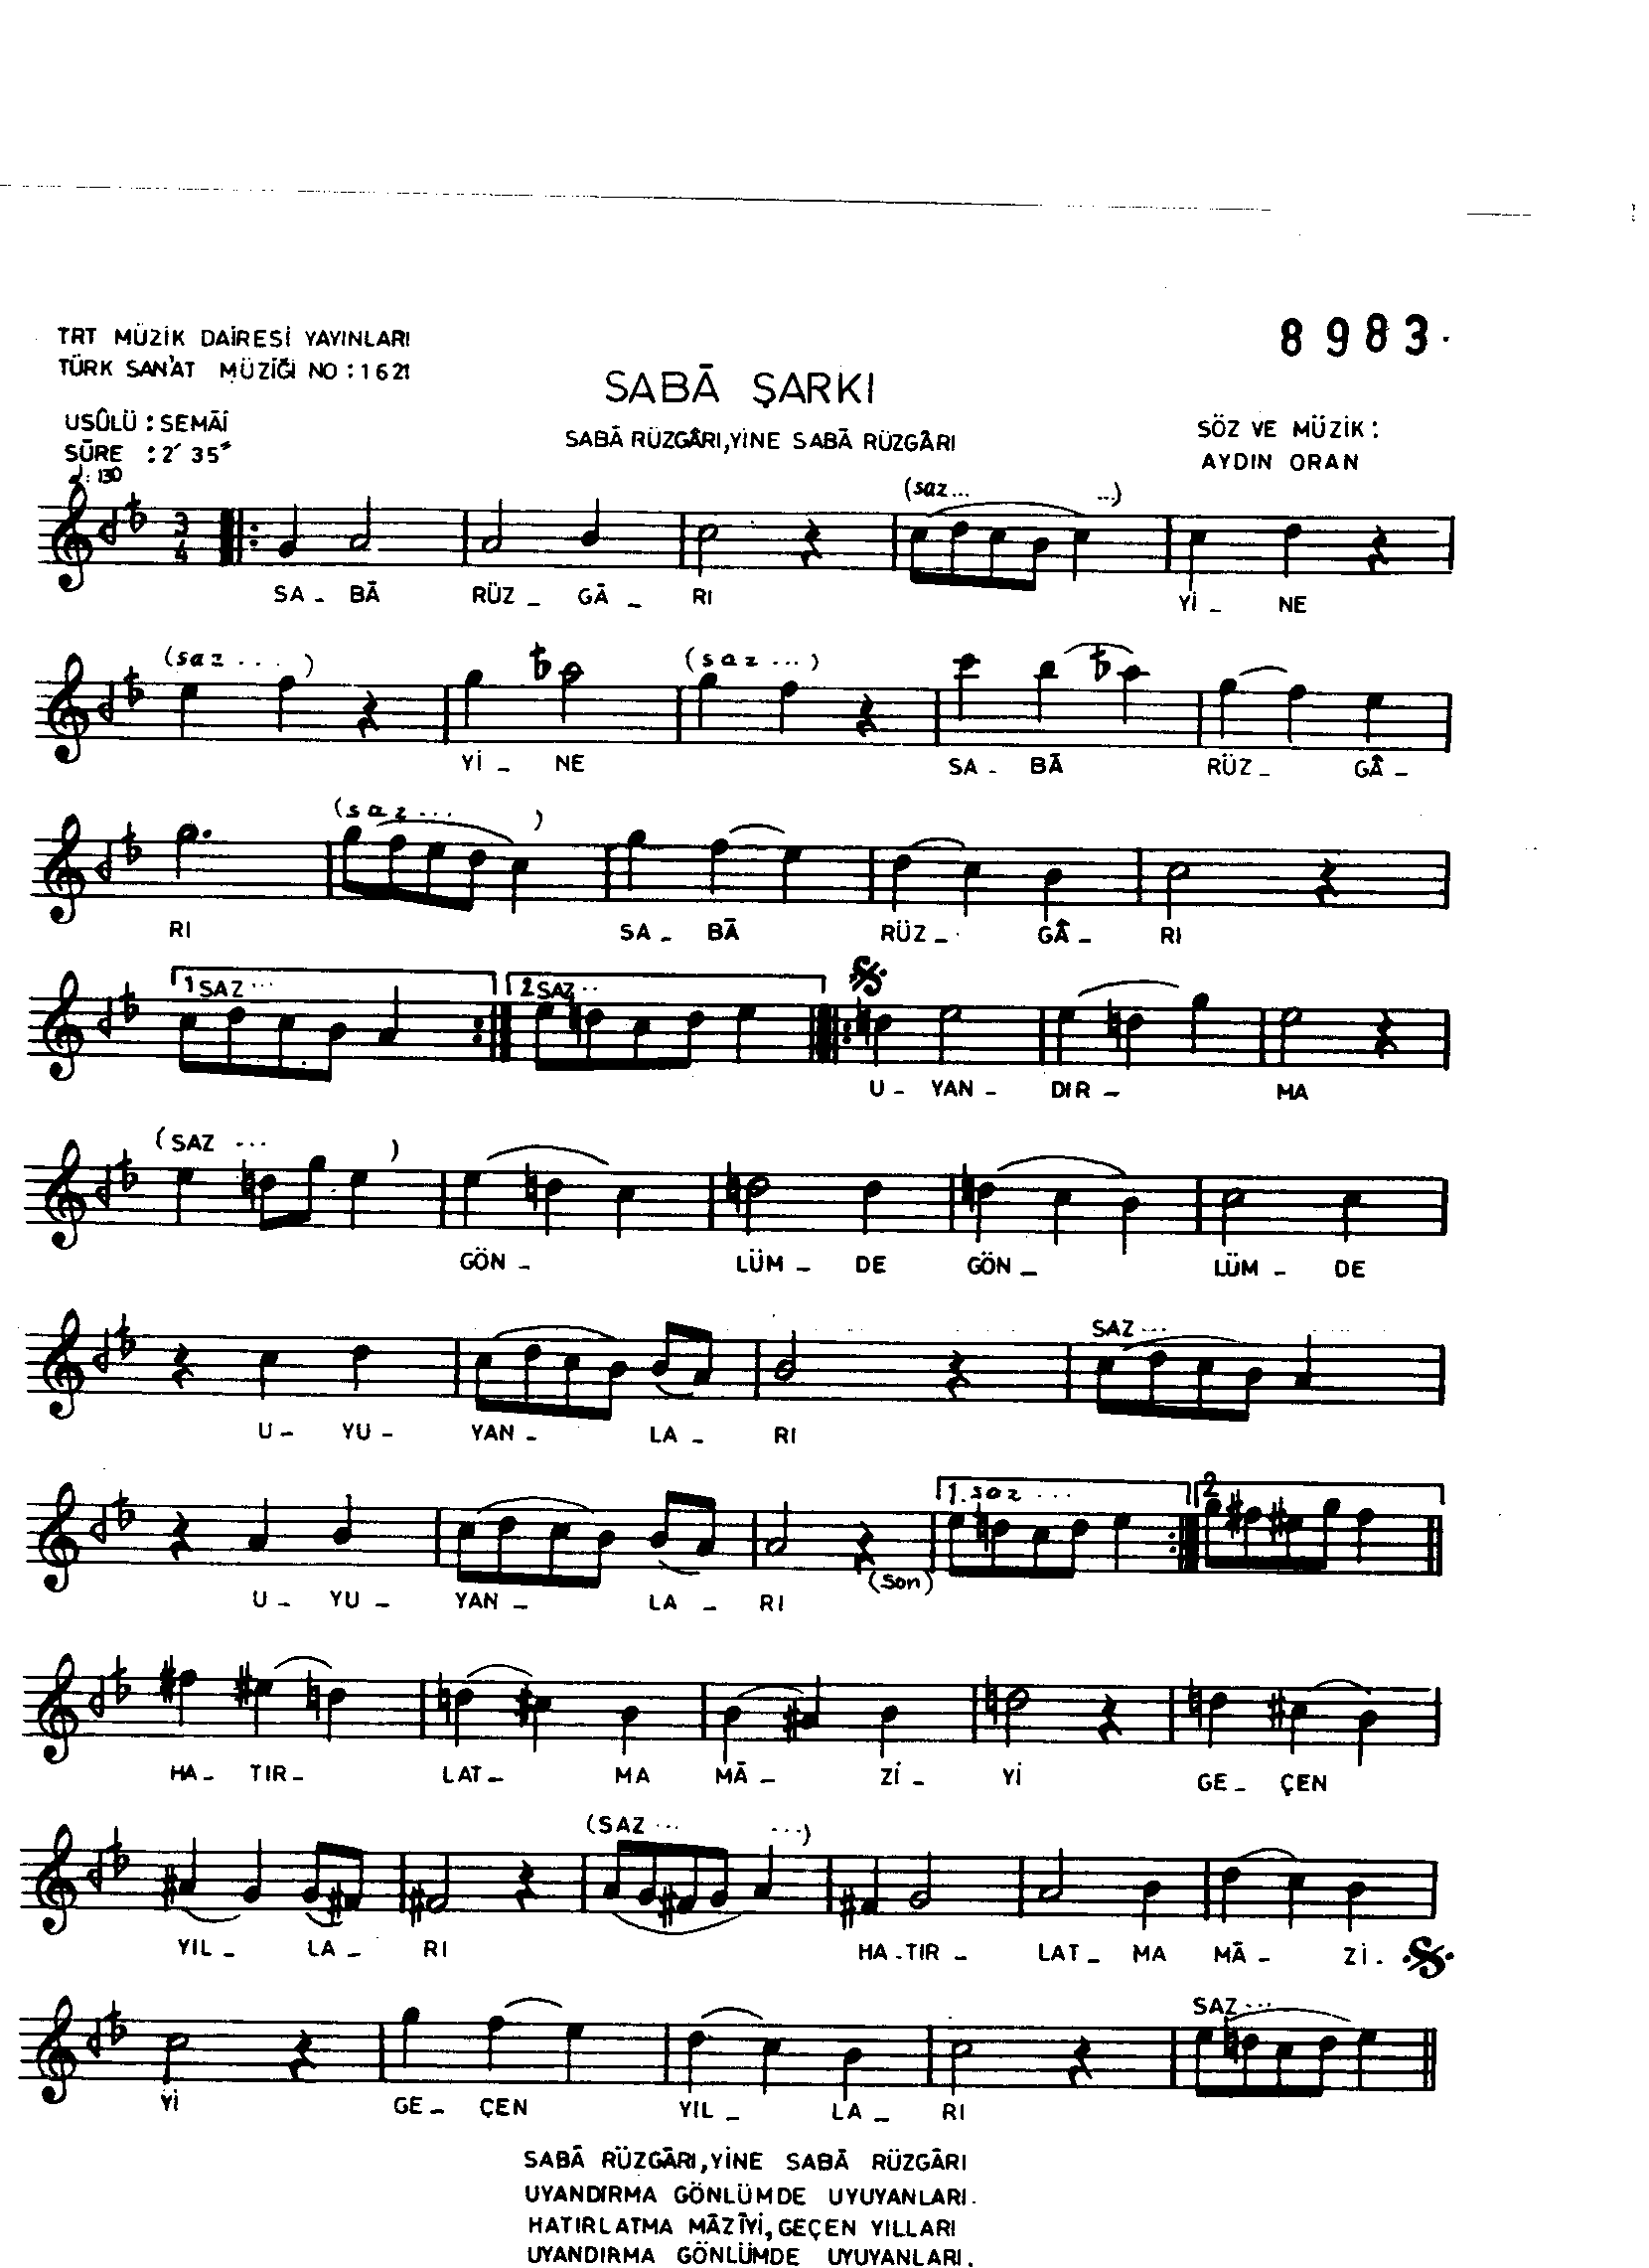 Sabâ - Şarkı - Aydın Oran - Sayfa 1